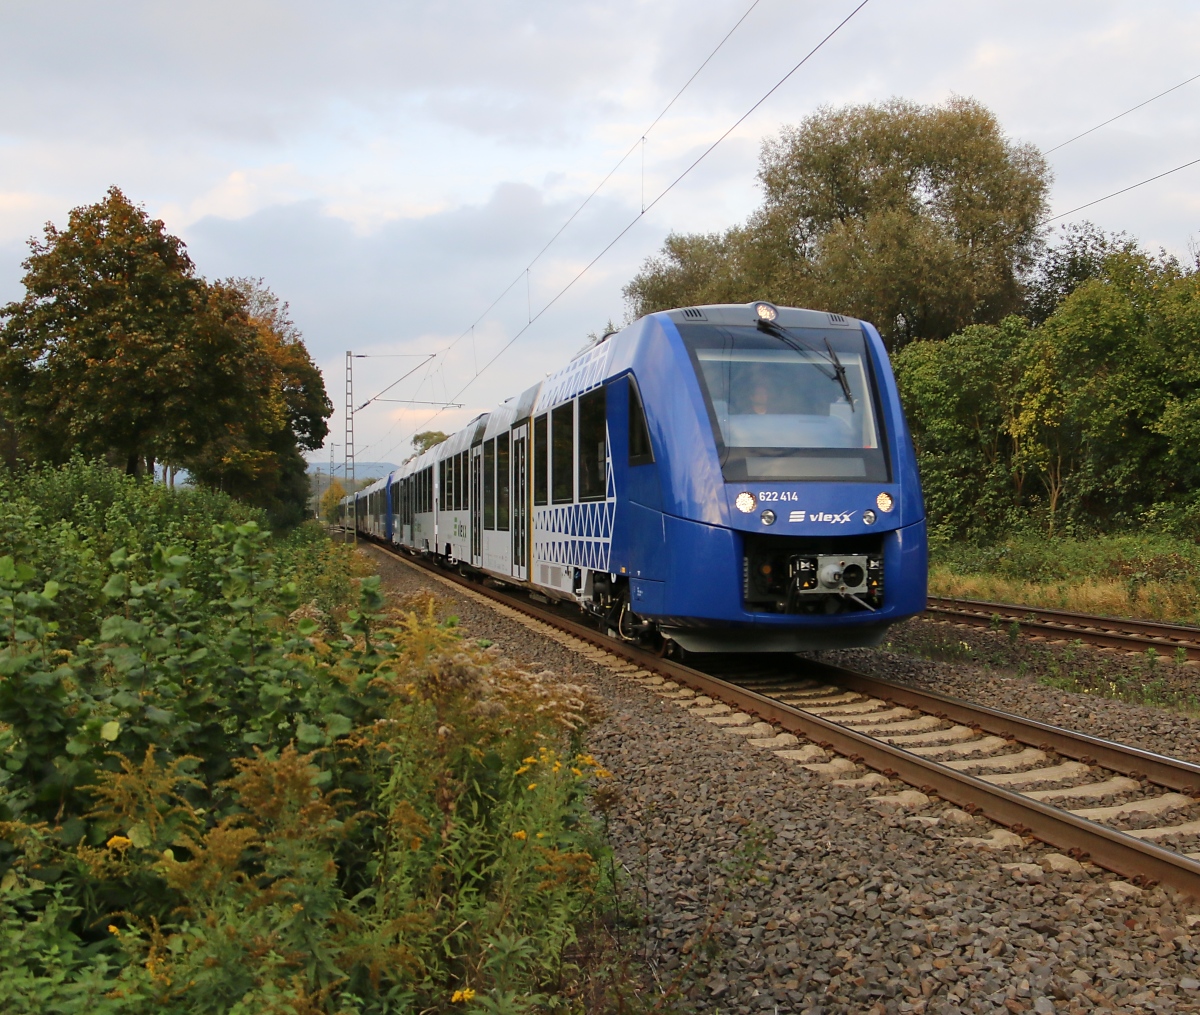 Am 30.09.2014 kamen drei Vlexx Triebzüge (622 414 zuvorderst) in Fahrtrichtung Süden durch Wehretal-Reichensachsen.  